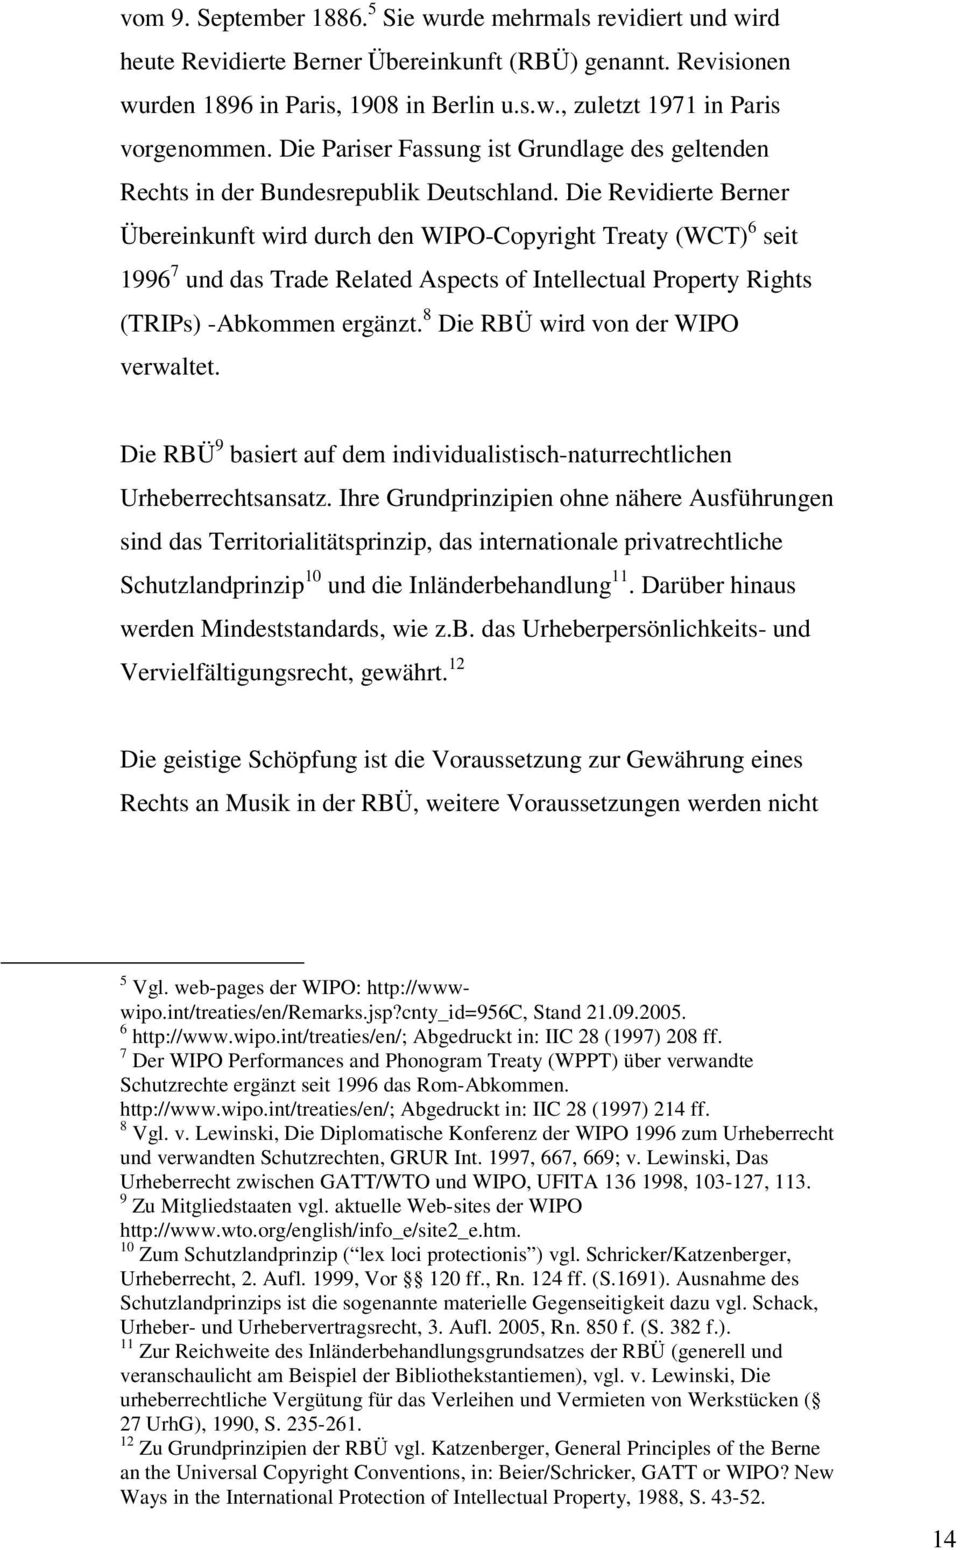 Die Revidierte Berner Übereinkunft wird durch den WIPO-Copyright Treaty (WCT) 6 seit 1996 7 und das Trade Related Aspects of Intellectual Property Rights (TRIPs) -Abkommen ergänzt.